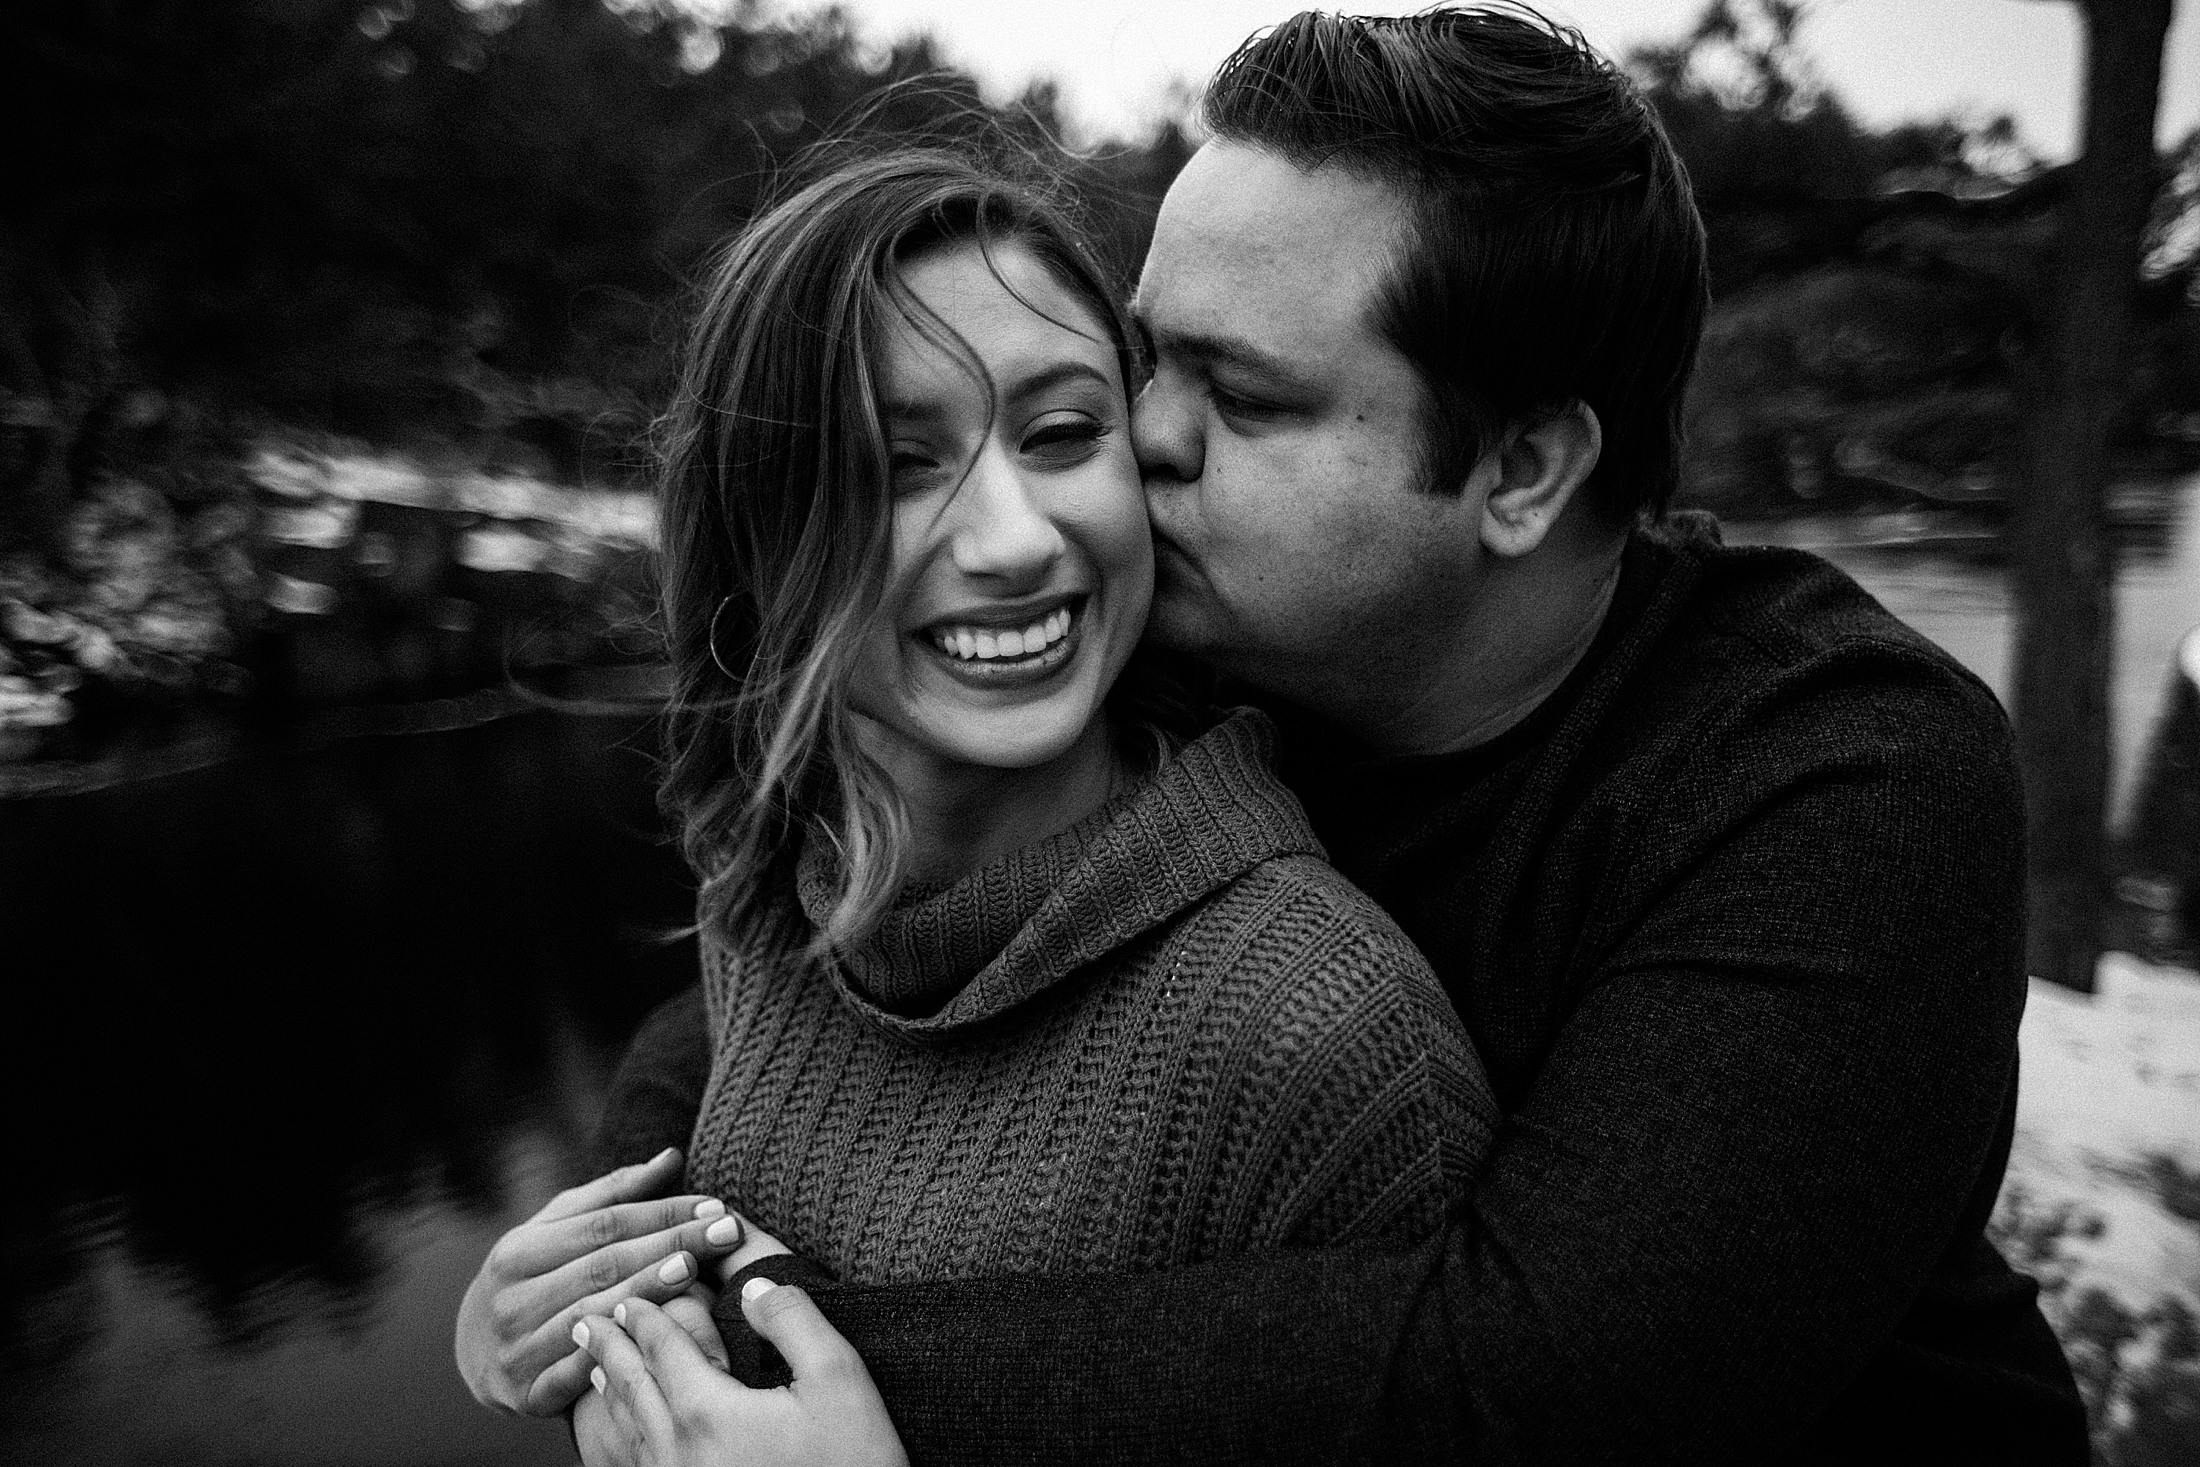 Phoenix Wedding Photographer, Minneapolis Wedding Photographer, Taylors Falls Engagement Photos